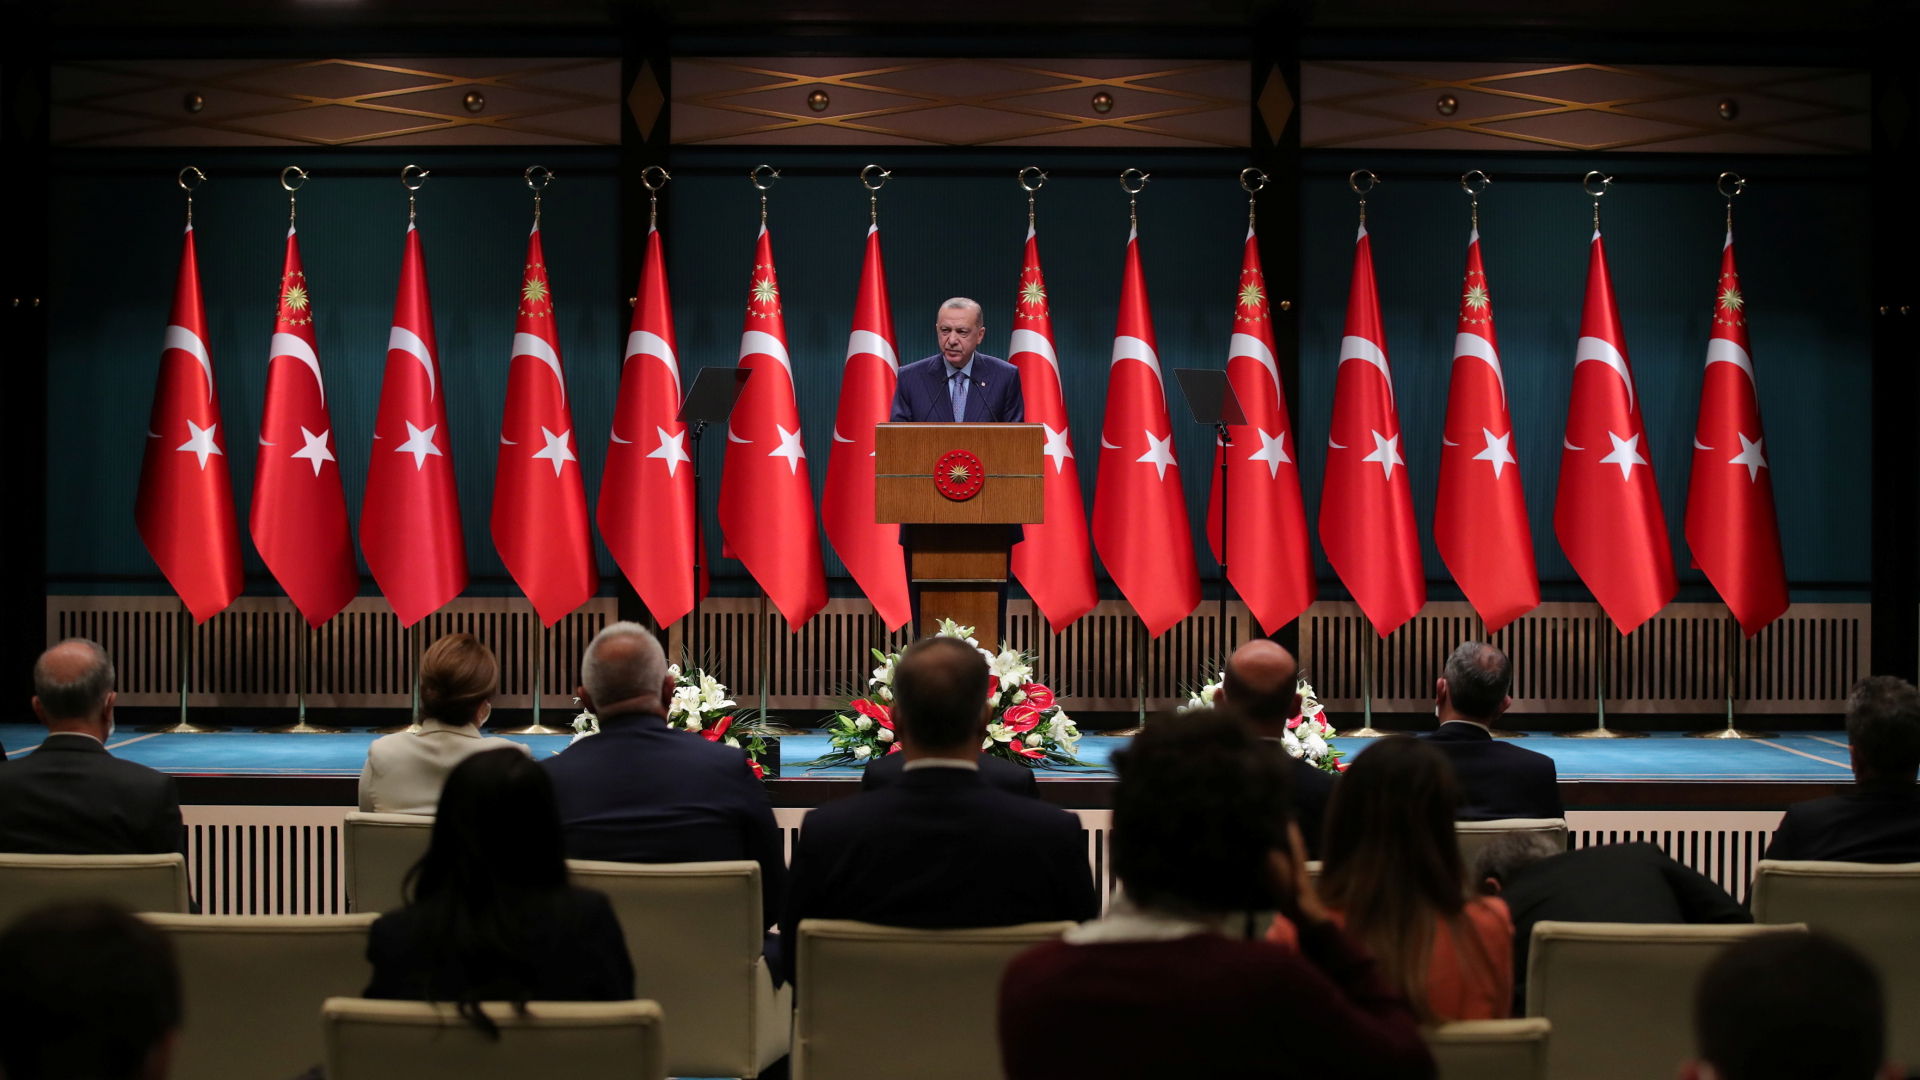 Der türkische Präsident Erdogan gibt vor Reportern ein Statement ab.